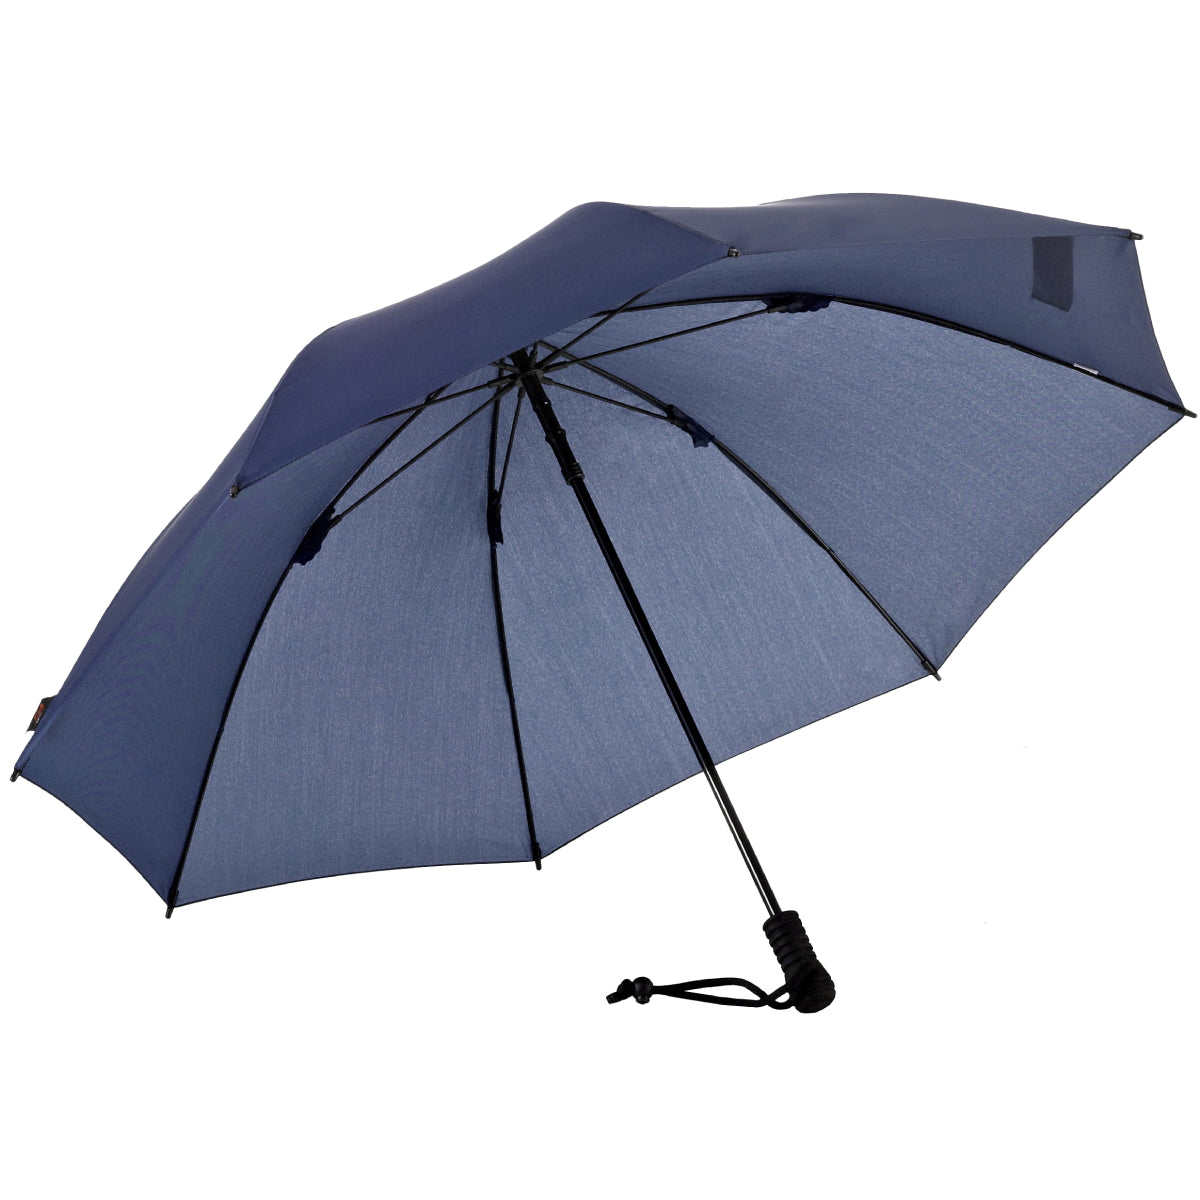 Umbrella Swing – Liteflex USA EuroSCHIRM EuroSCHIRM